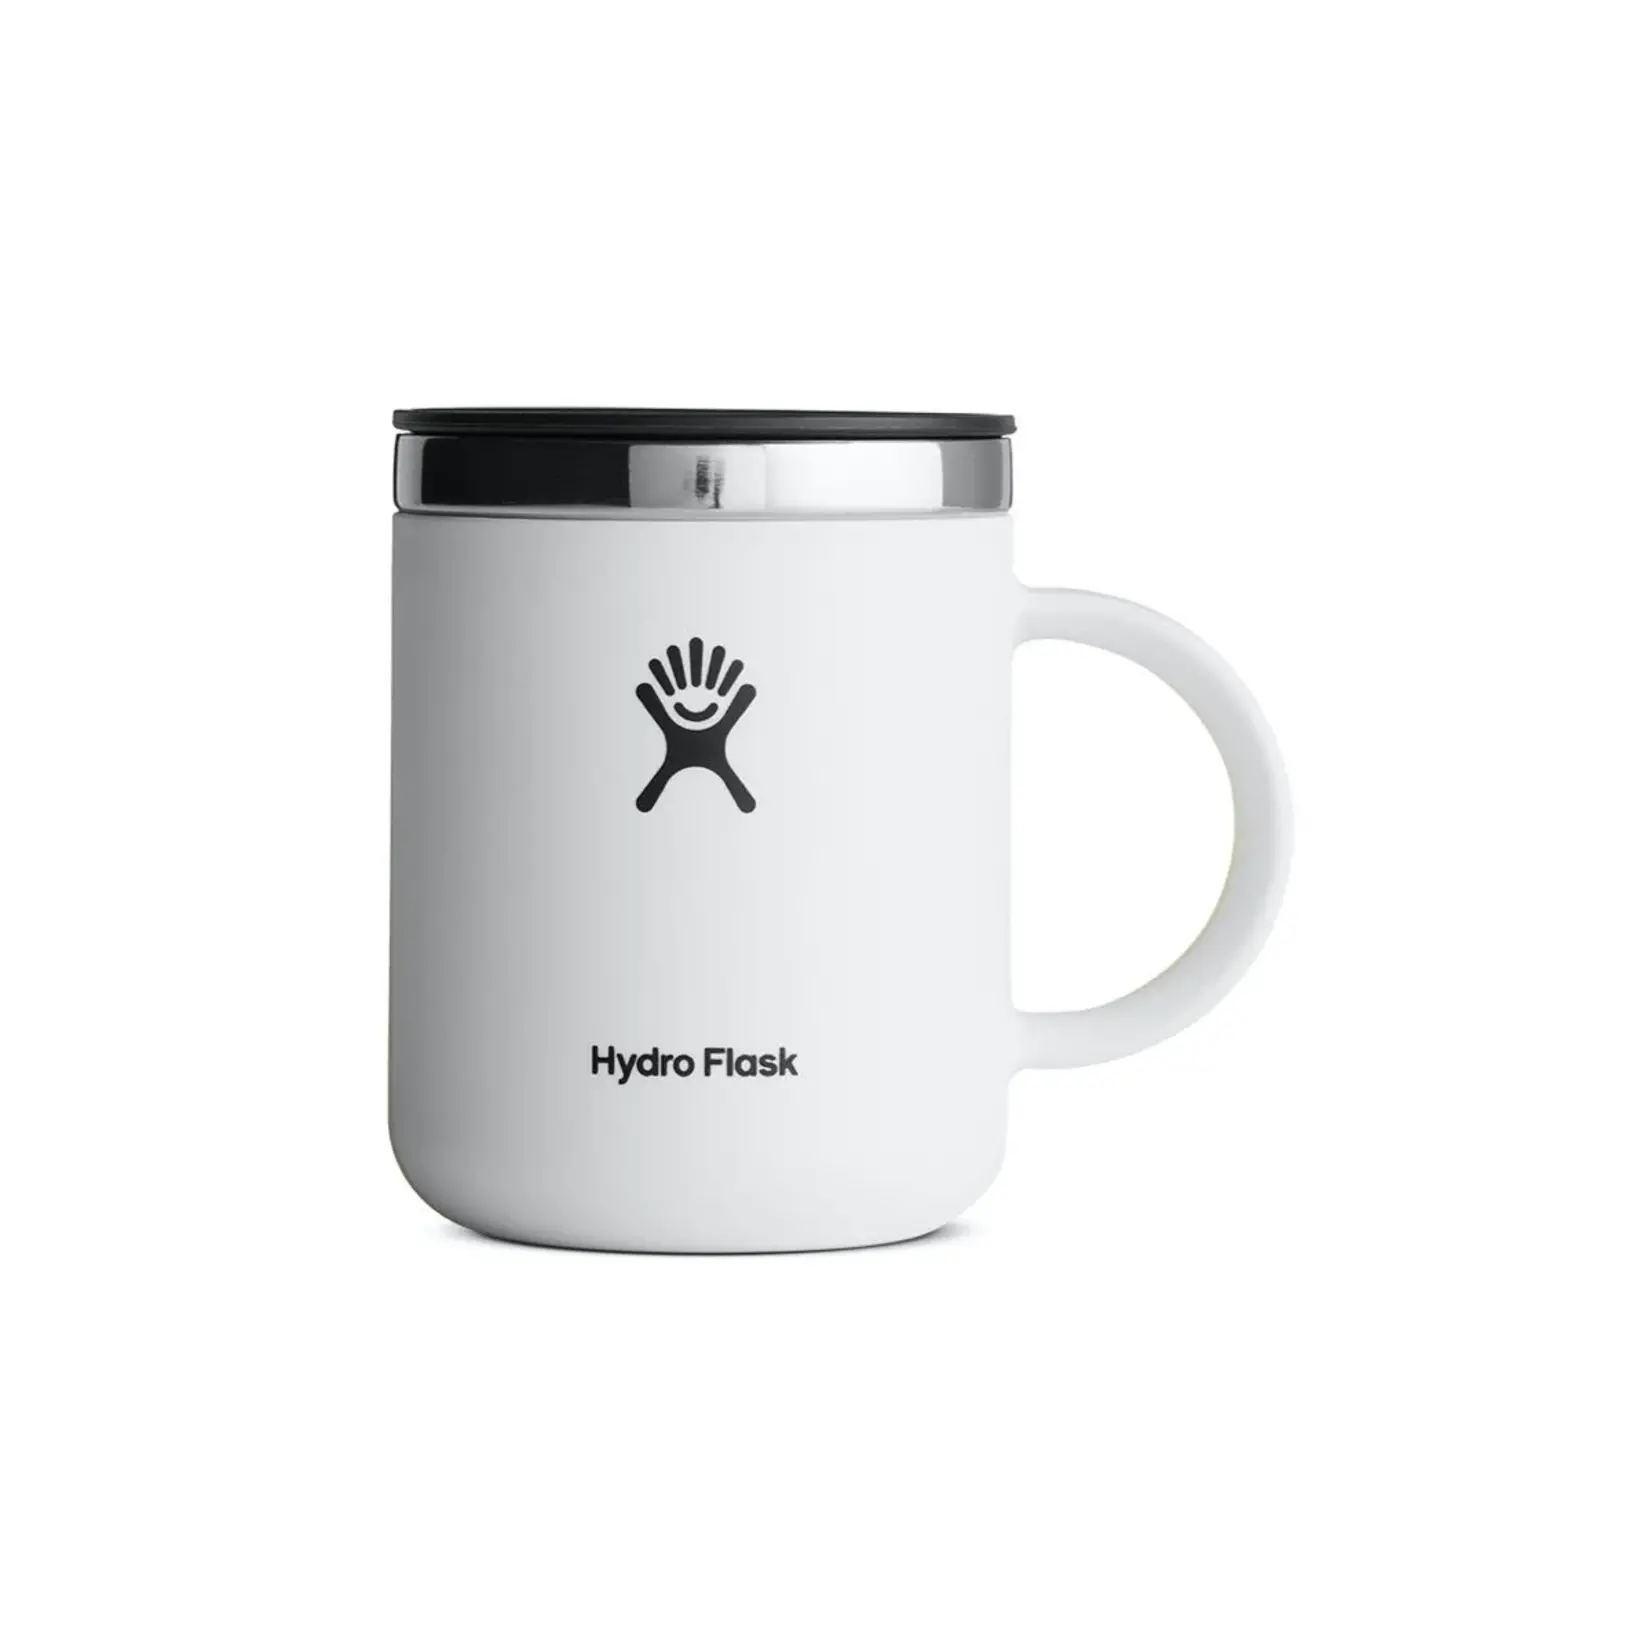 Hydro Flask 12oz mug